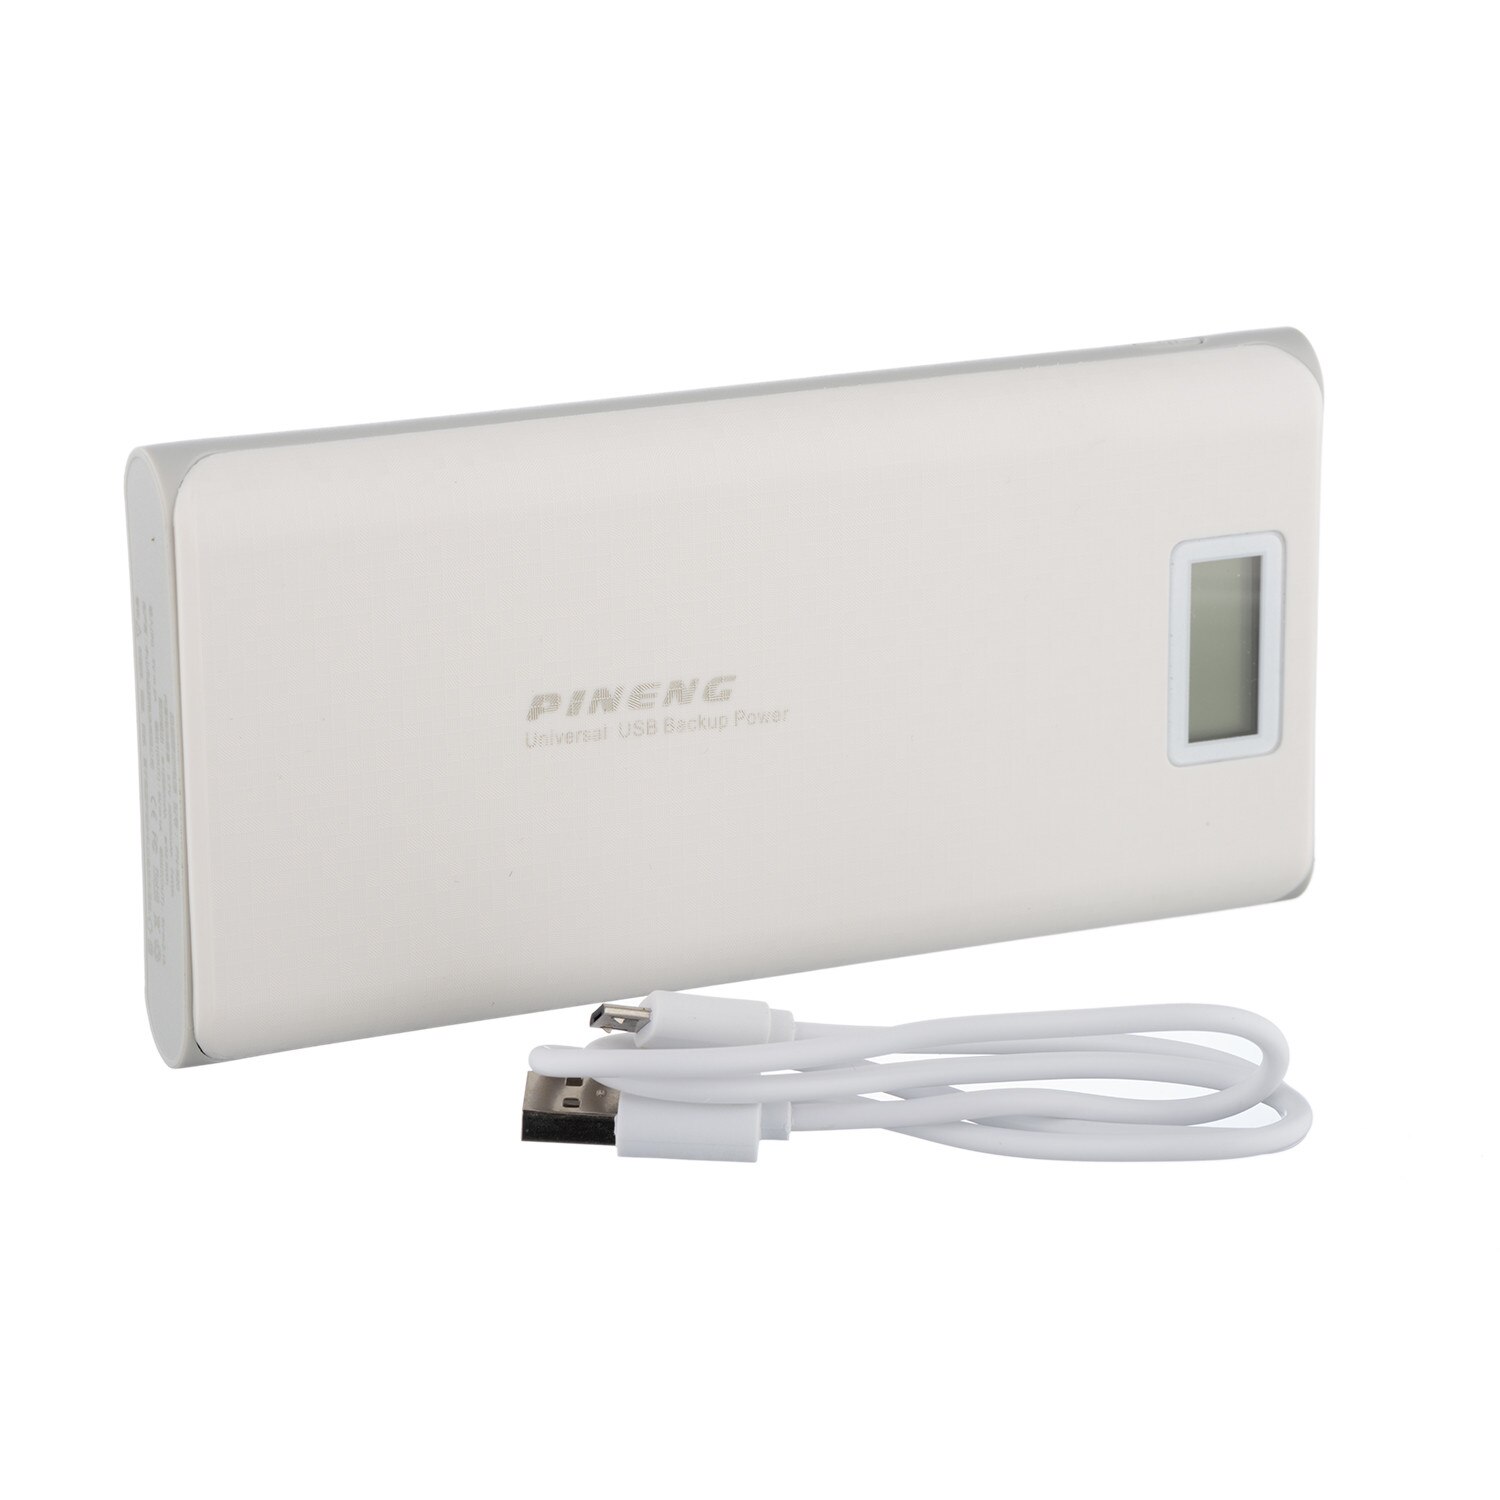 Baterie externa Pineng PN-999, 20000 mAh, 5V, 2 porturi USB, afisaj LED, Alb-Gri - eMAG.ro